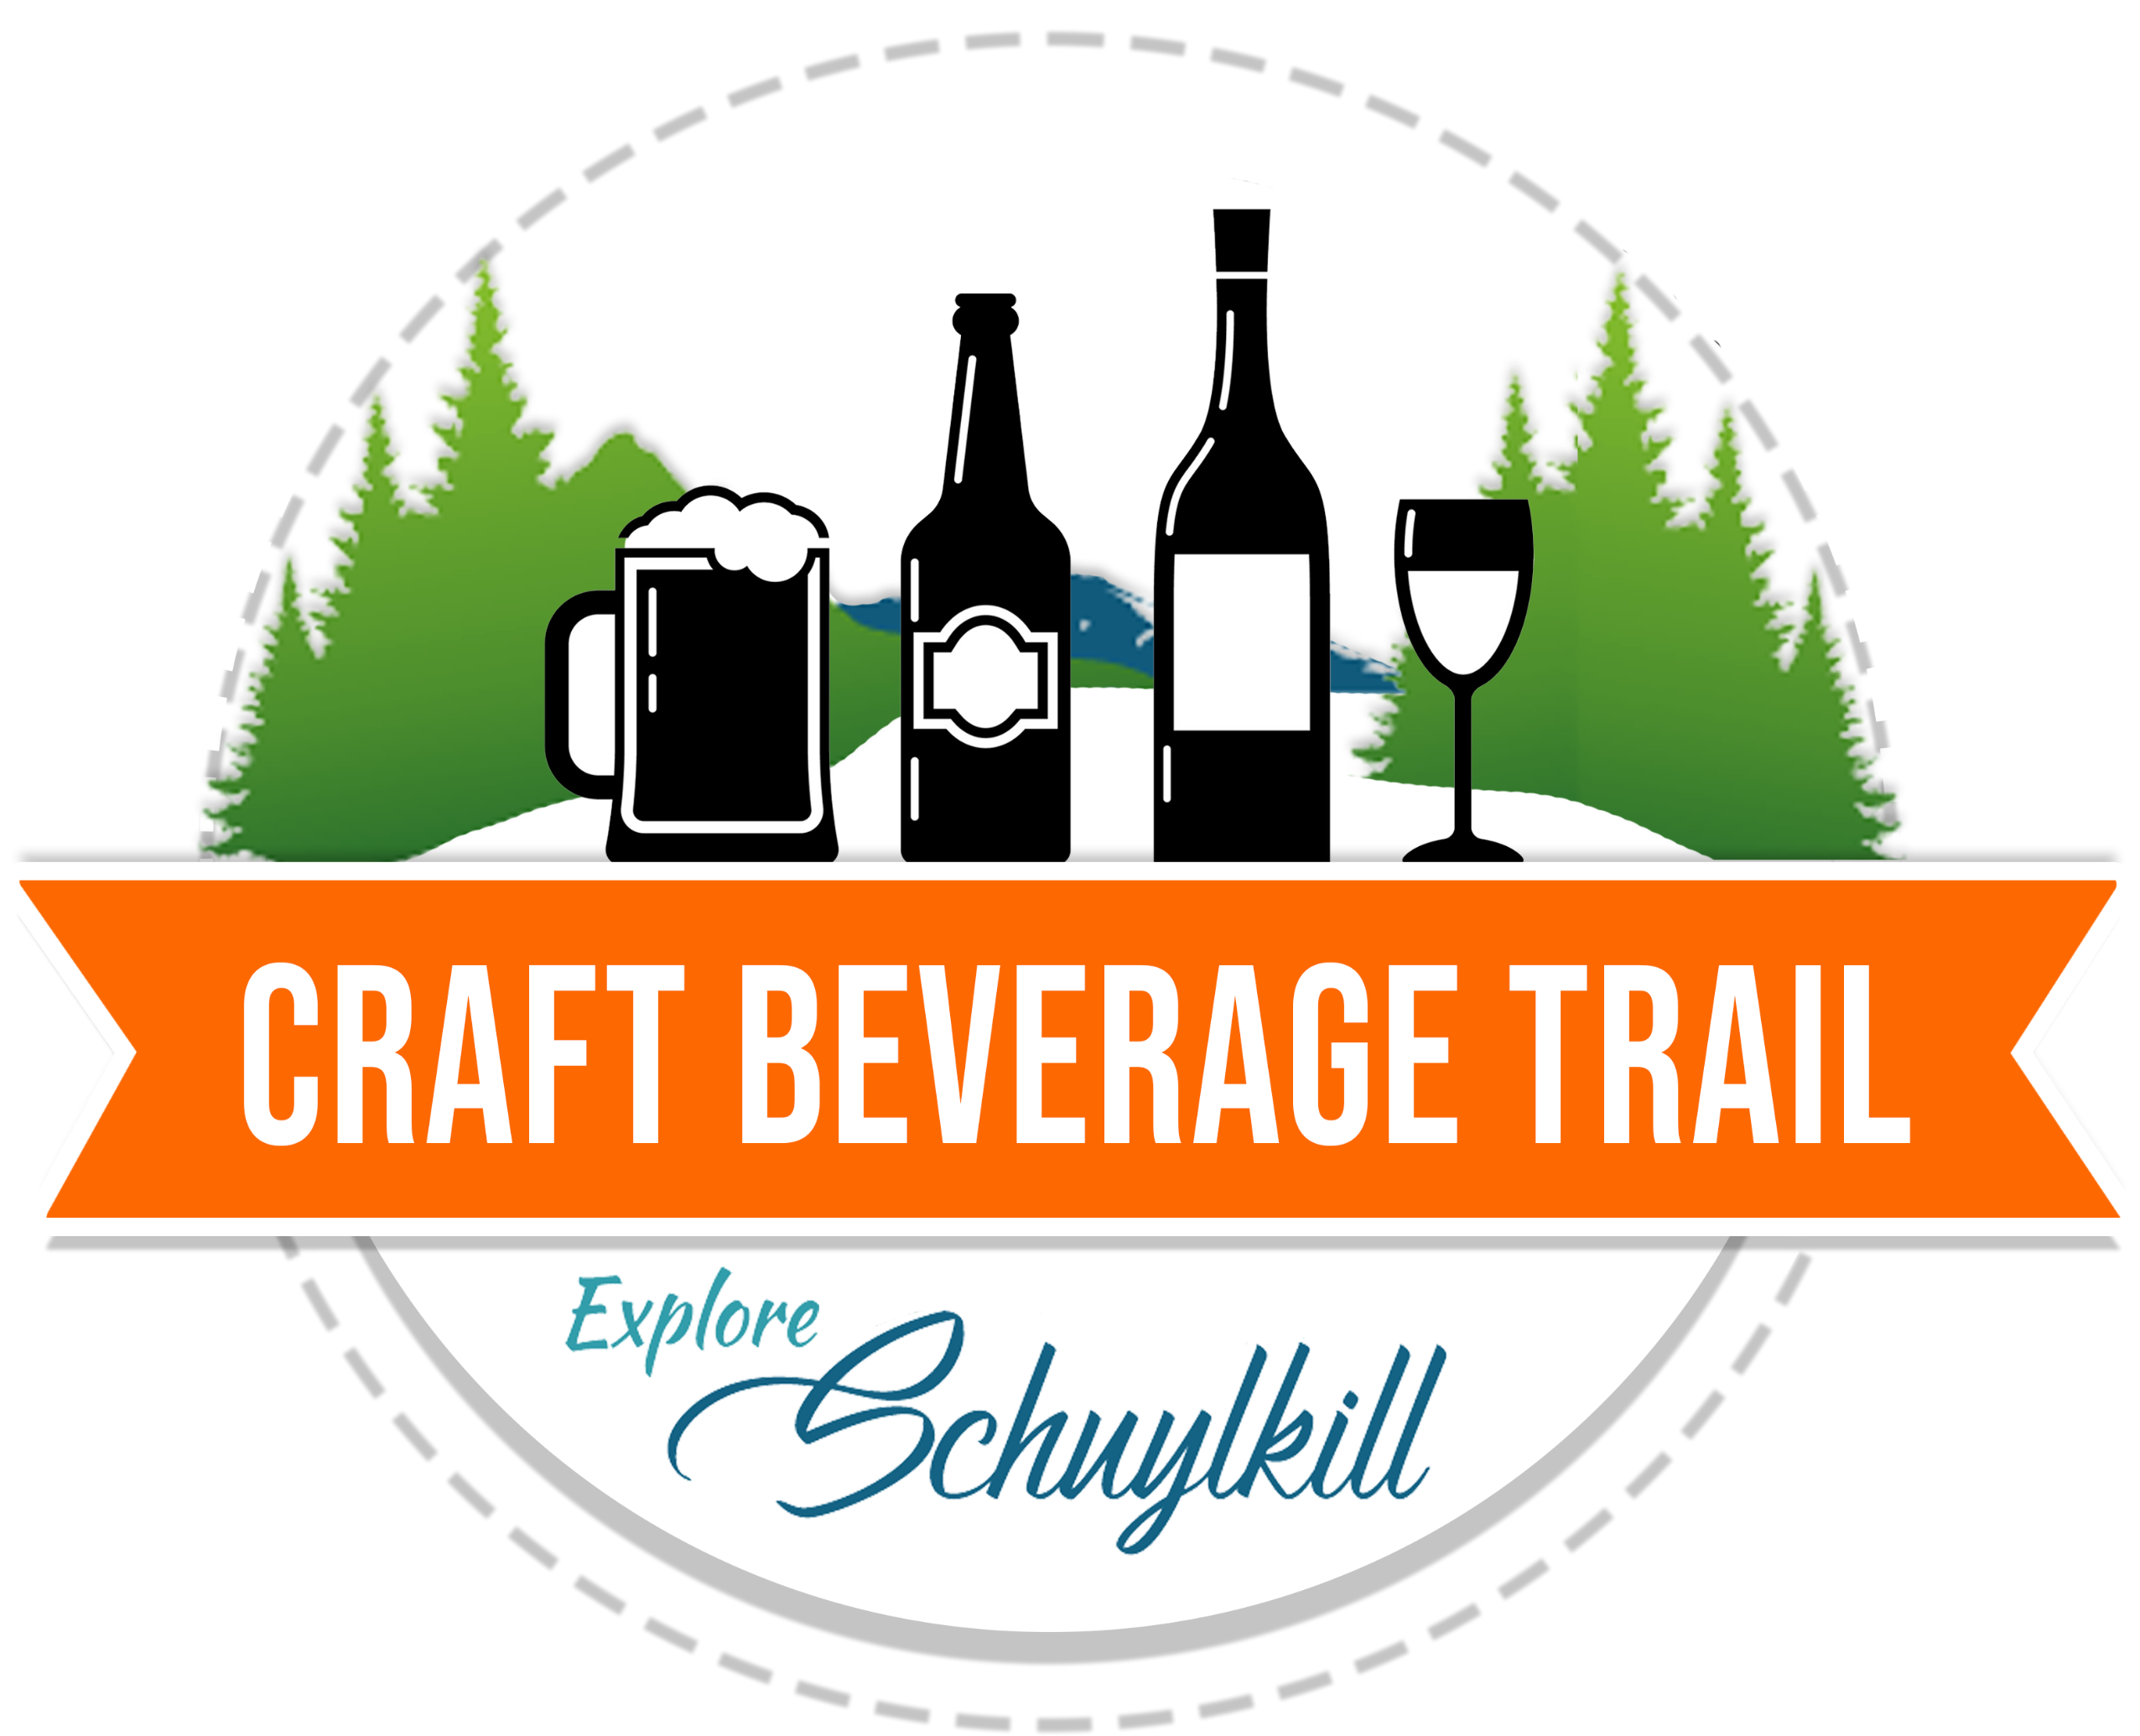 Schuylkill Craft Beverage Trail logo